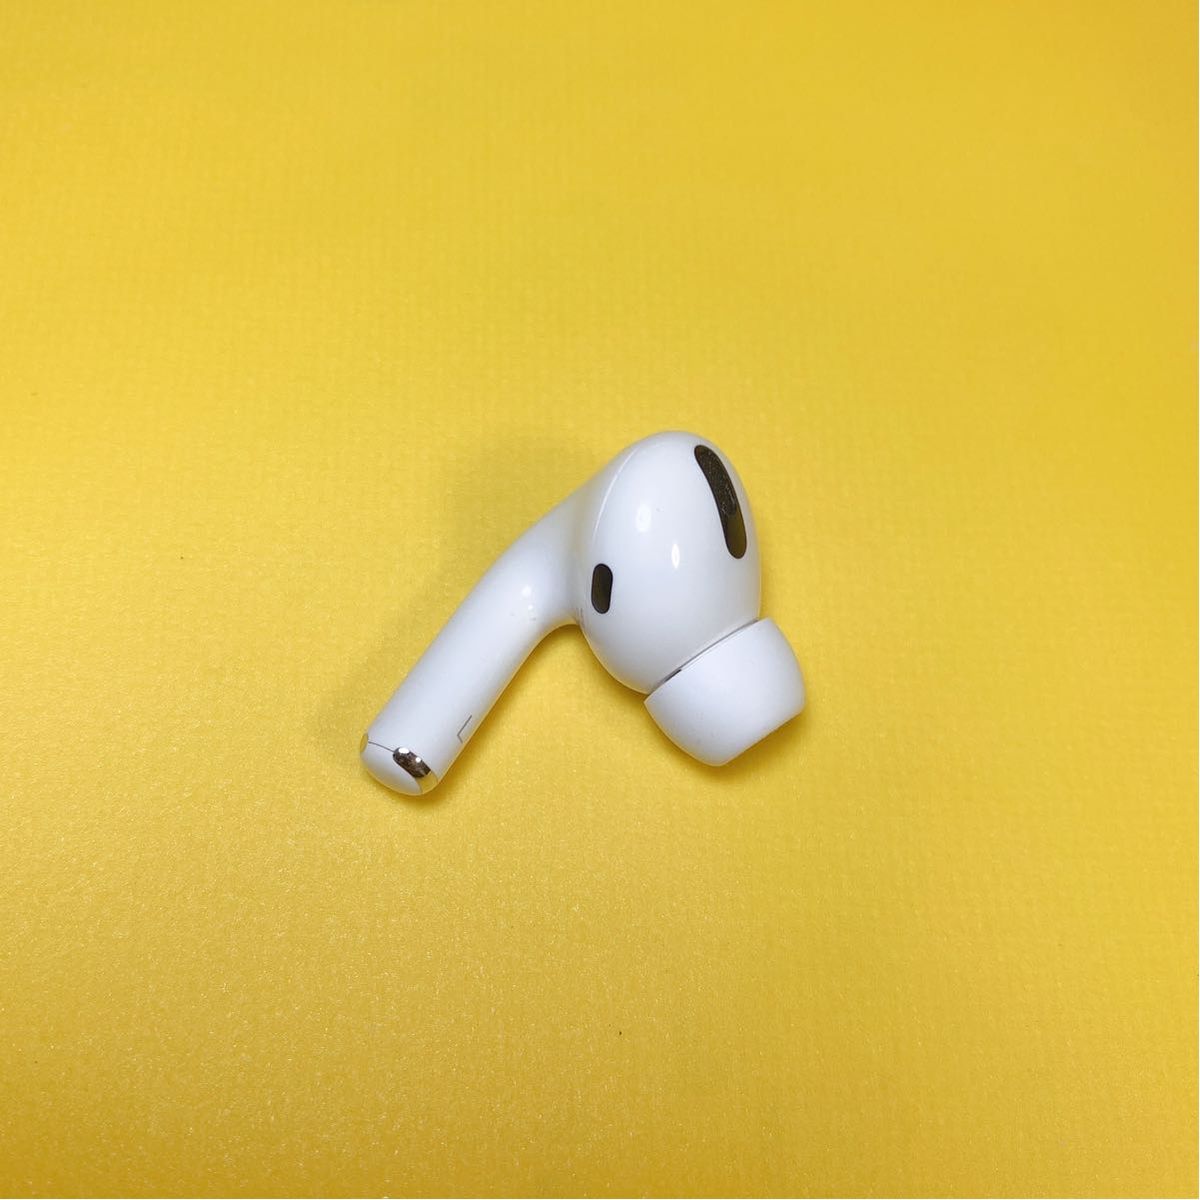 Apple純正品 AirPods Pro 第一世代 左耳のみ エアーポッズプロ 